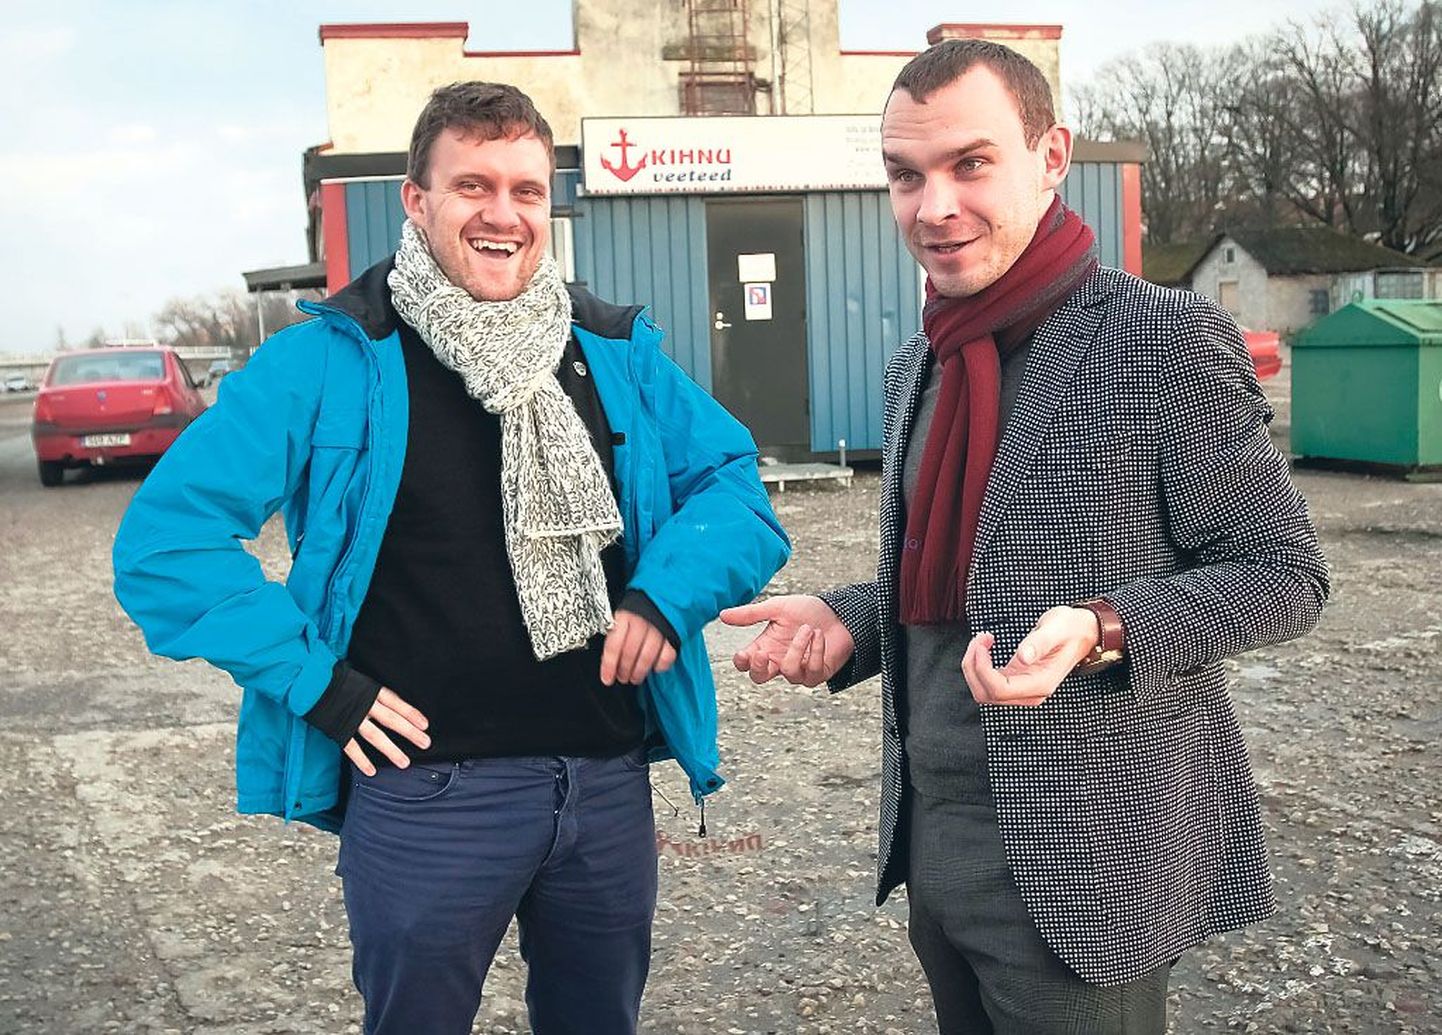 AS Kihnu Veeteede nõukogu liikmed Sander Kilk (vasakul) ja Kaspar Kokk lubasid Kihnu nime Eesti meretranspordi suurel kaardil hoida isegi siis, kui firma peaks kunagi hakkama Rootsi vahet kurseerima.